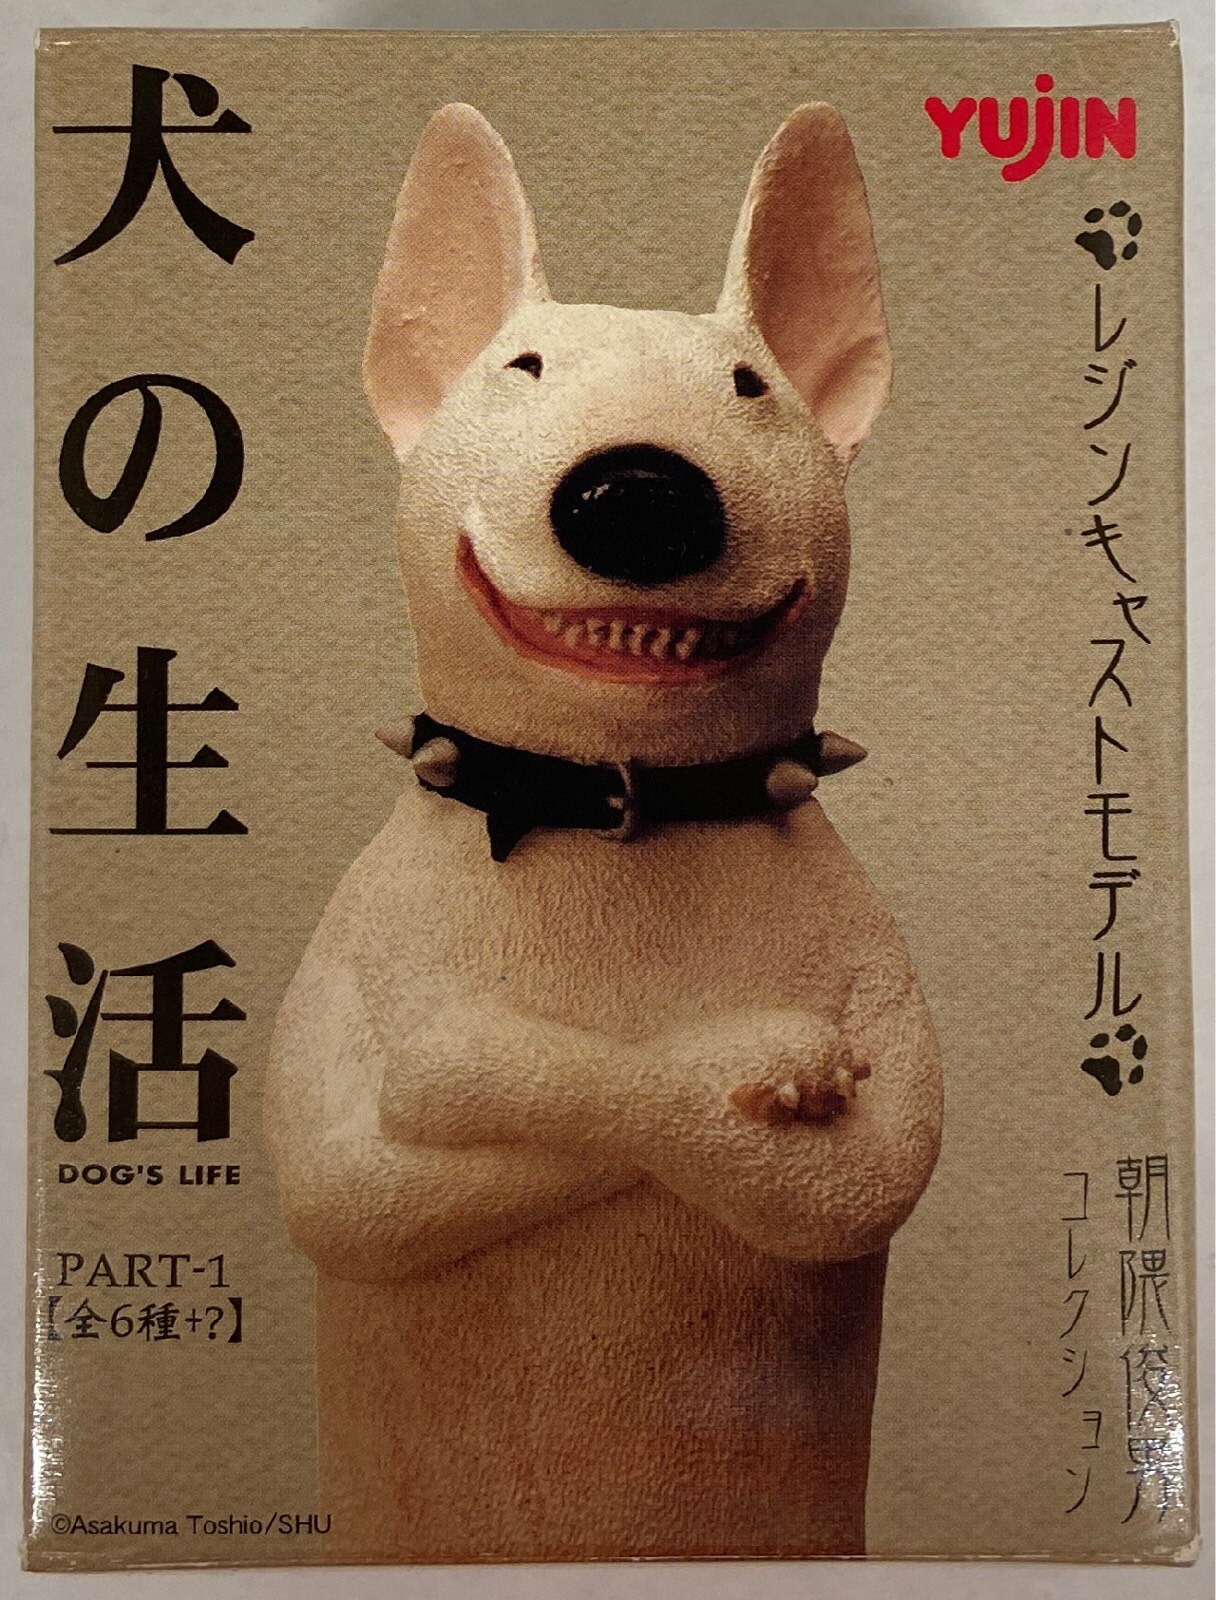 朝隈俊男コレクション 犬の生活パートワン全６種+シークレット+2